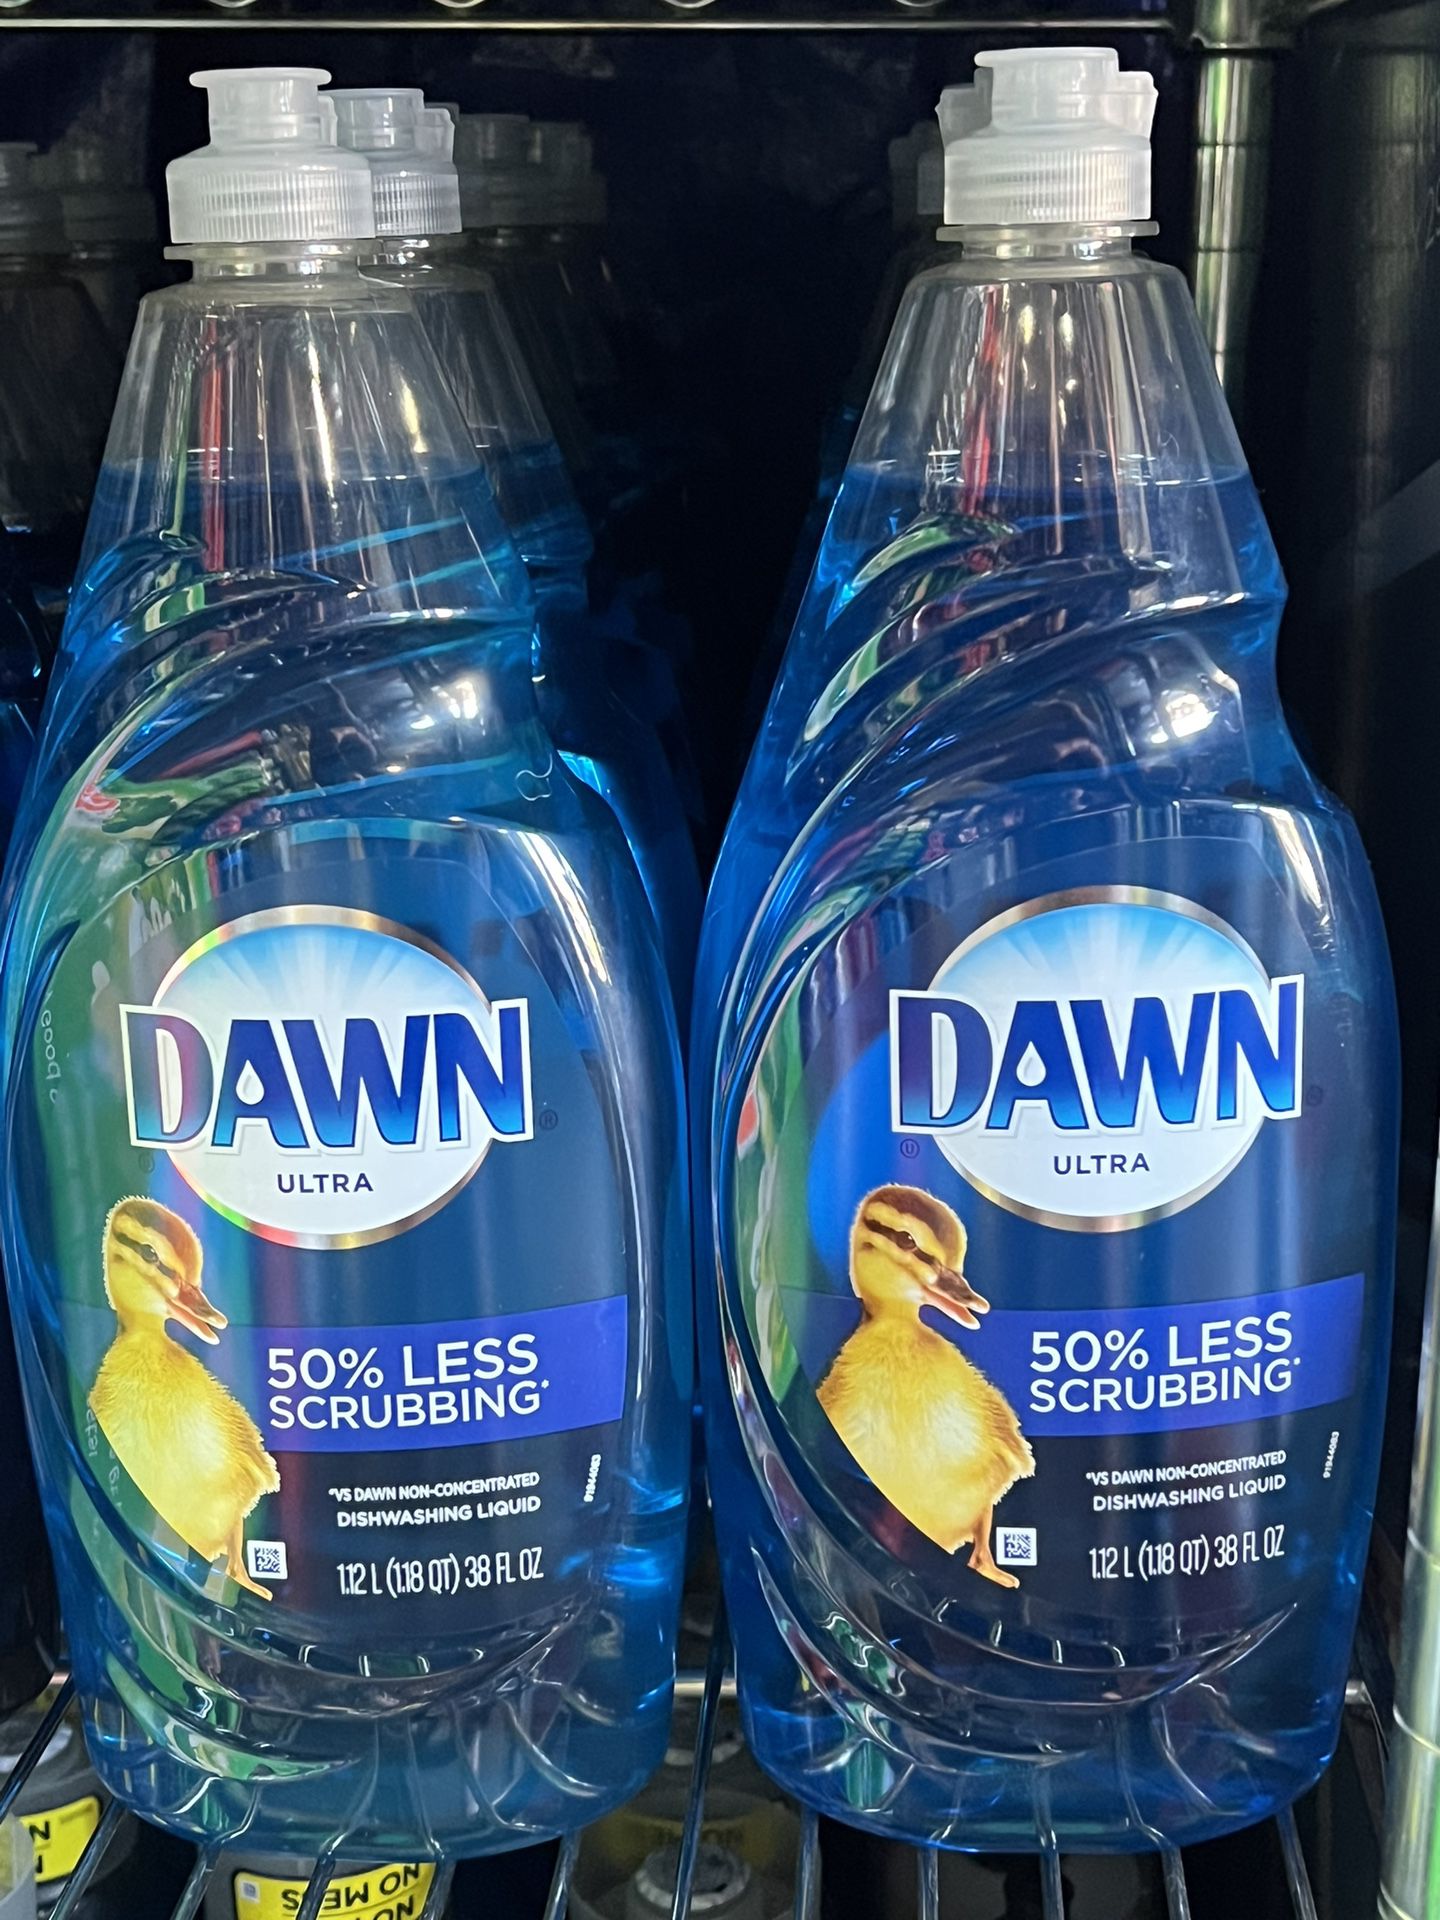 Dawn Ultra Ultra Dishwashing Liquid - 1.12 l (1.18 qt) 38 fl oz